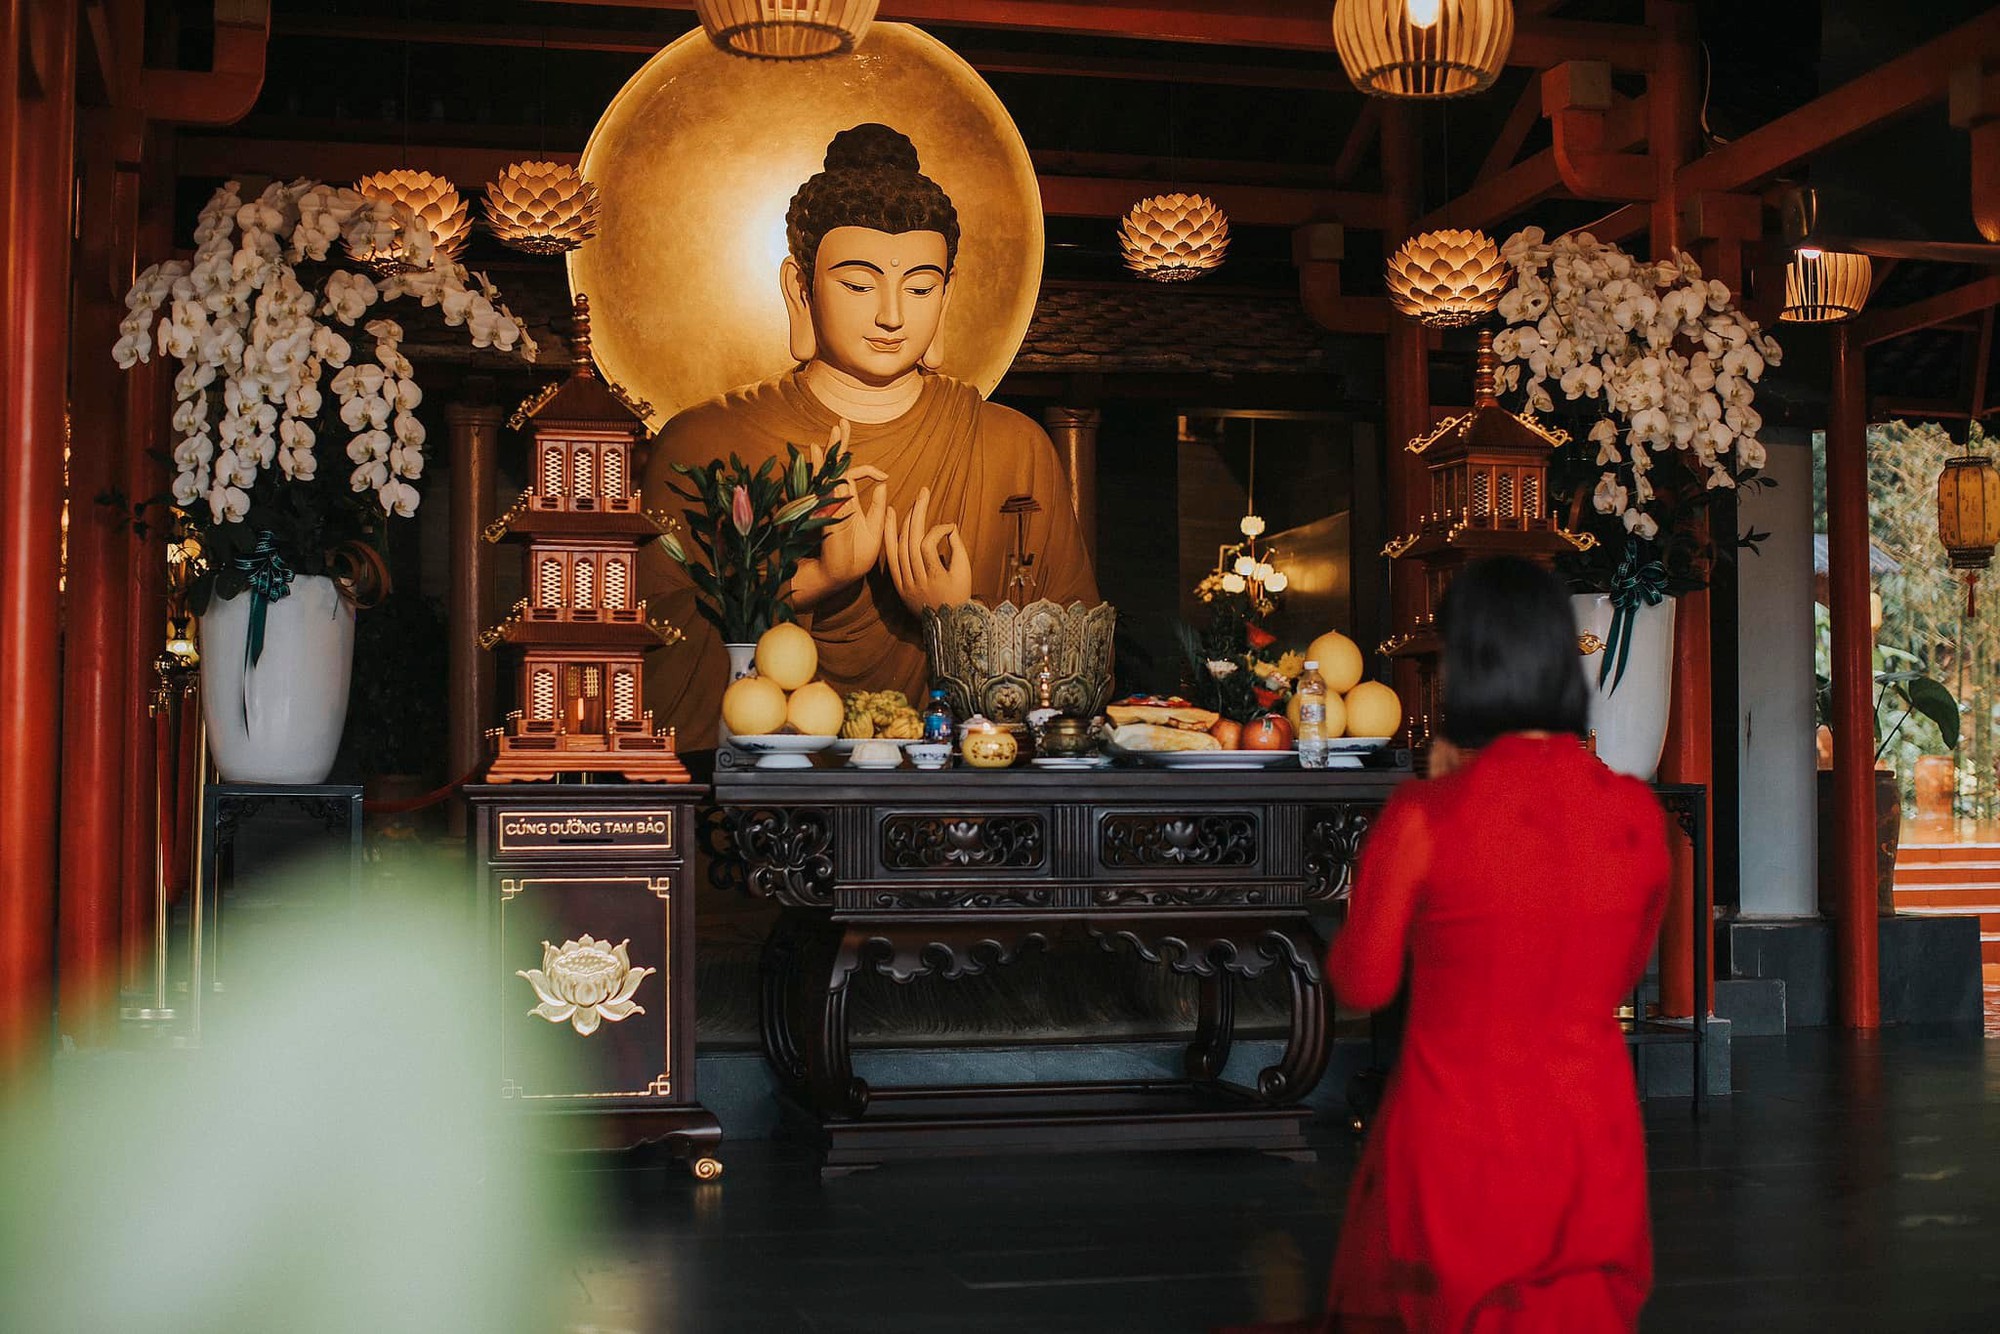 Phát hiện ngôi chùa có cây cổ thụ trăm tuổi, cách Hà Nội chỉ hơn 1 giờ lái xe, phù hợp đi lễ dịp đầu năm- Ảnh 9.